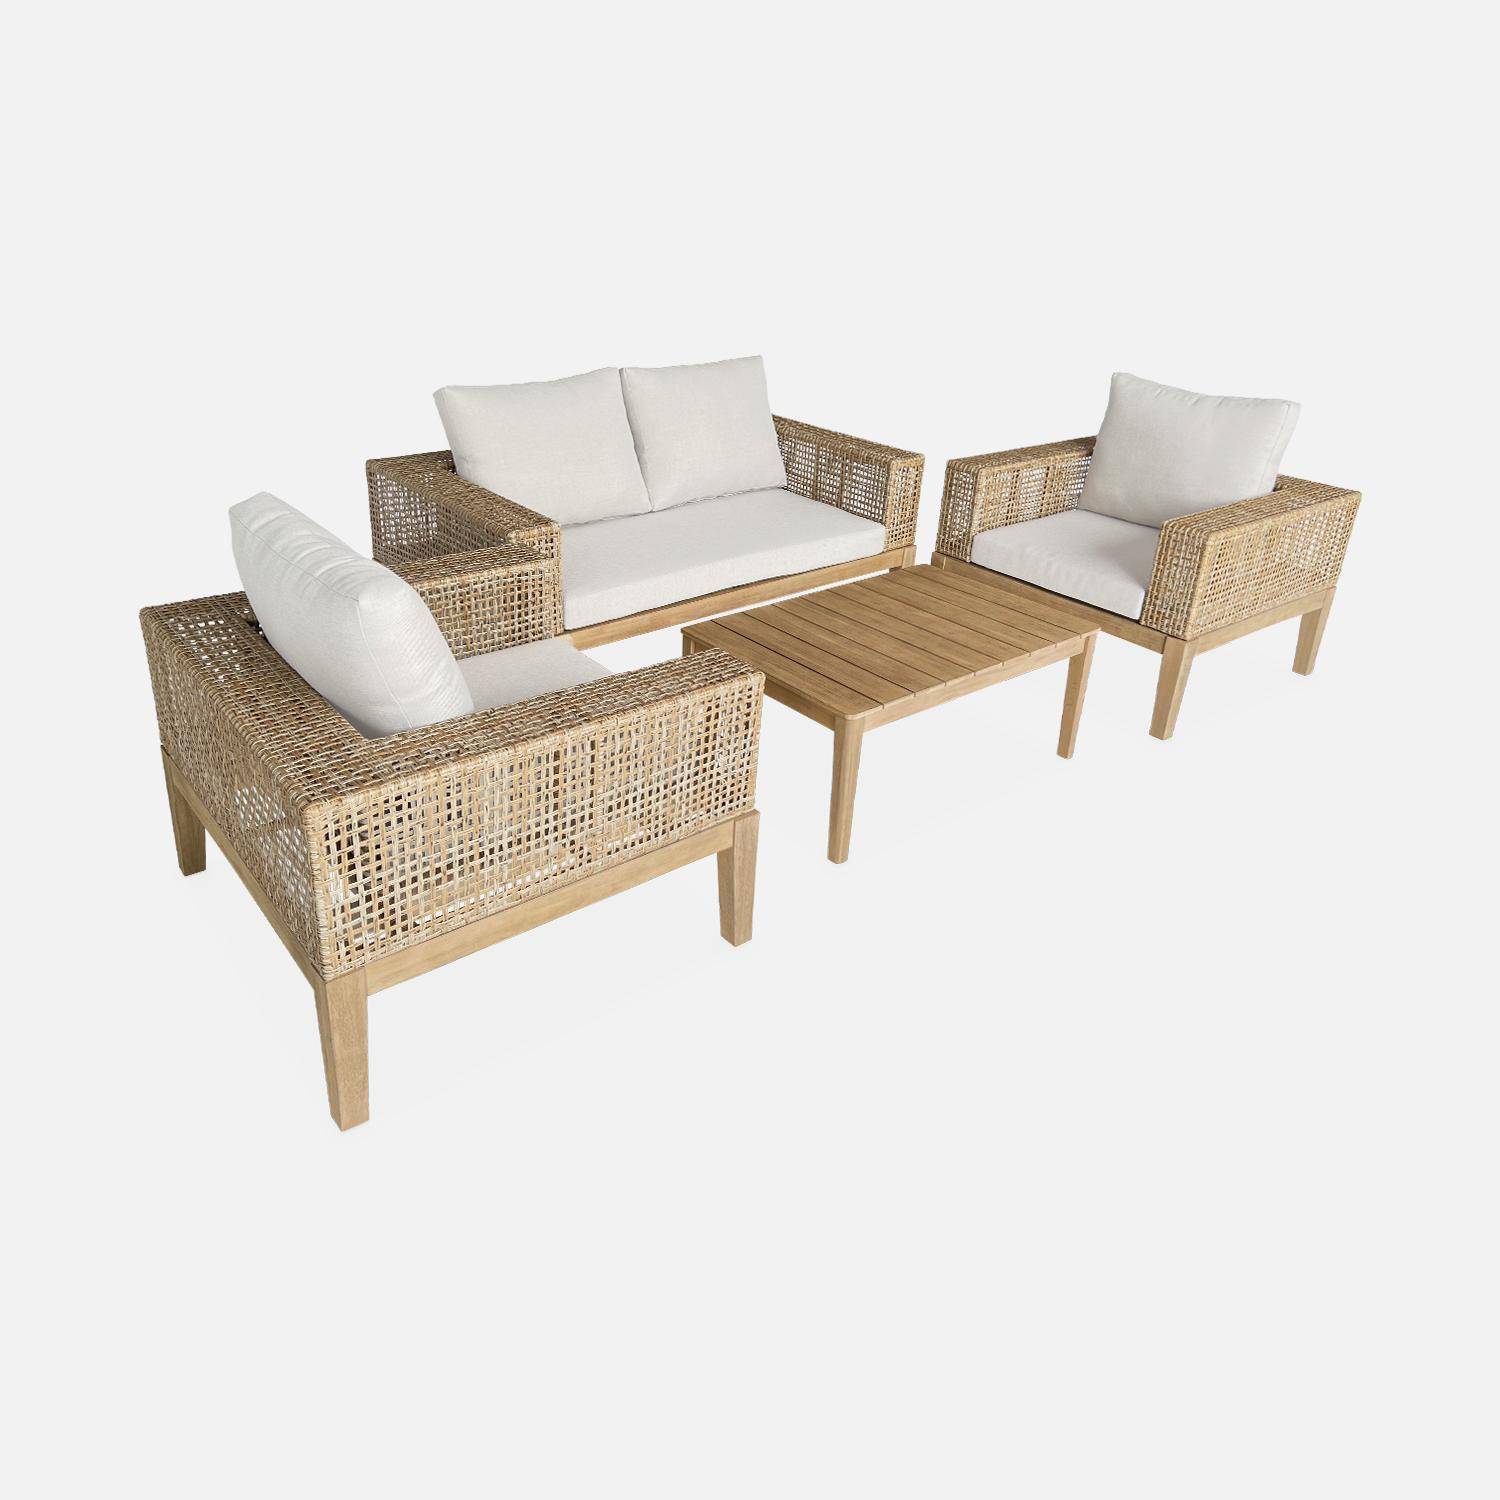 Gartenmöbel Olinda, Rohrgeflecht und Holz, 4-Sitzer, beige, FSC Akazienholz, gebürstet, gebleicht Photo3